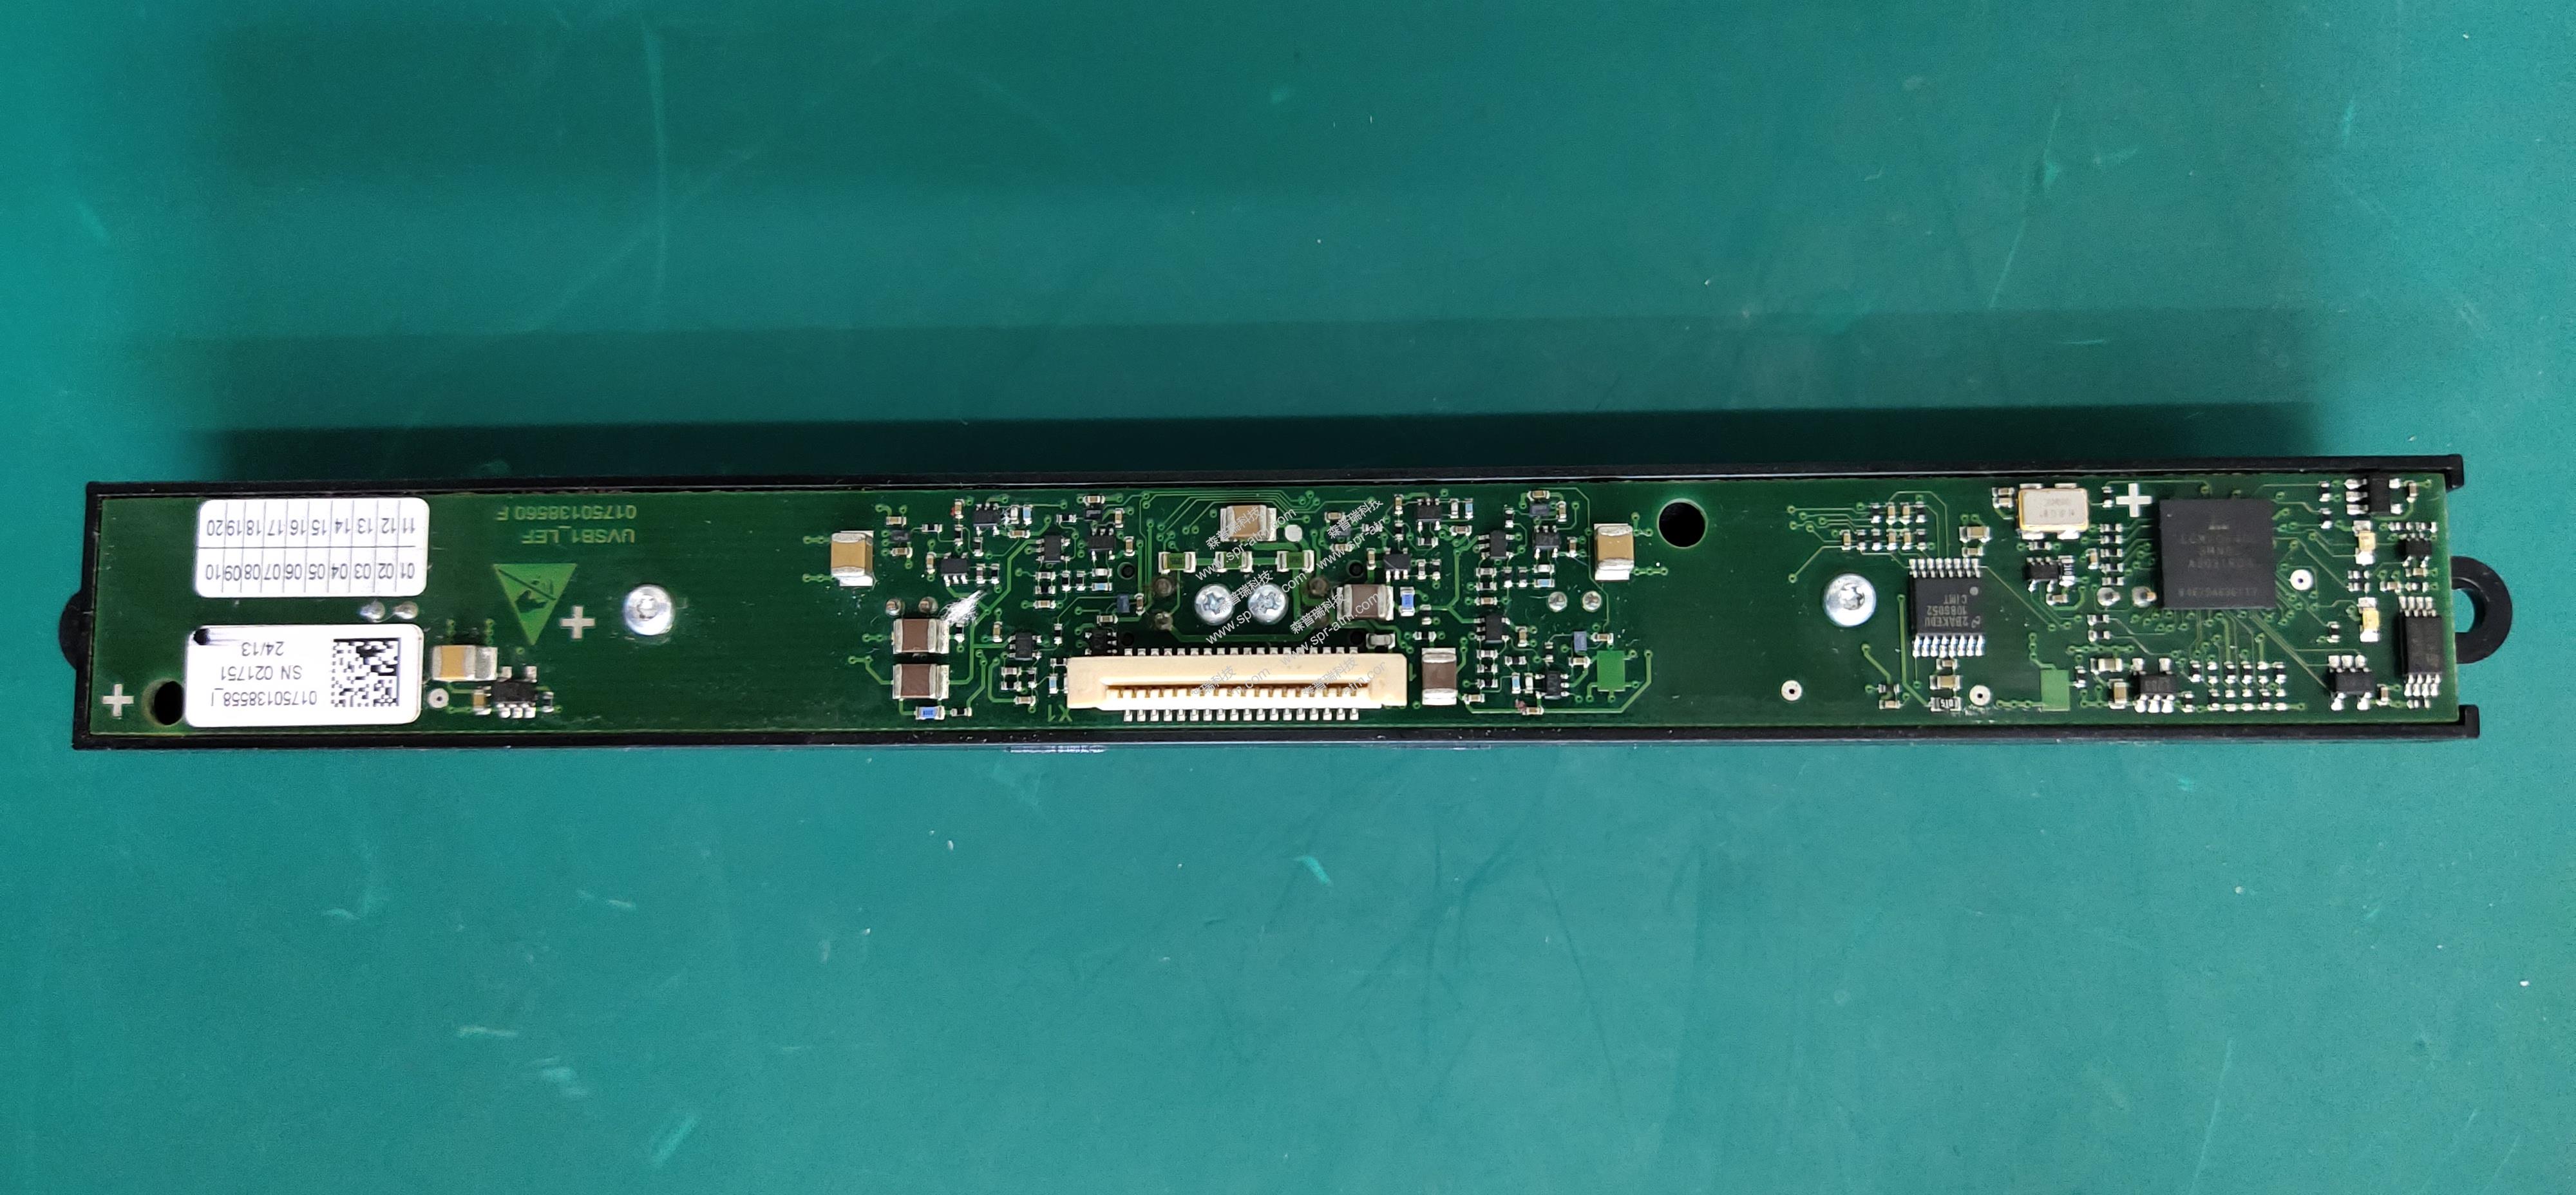 C4060 主体传动模块传感器组件-ATM配件